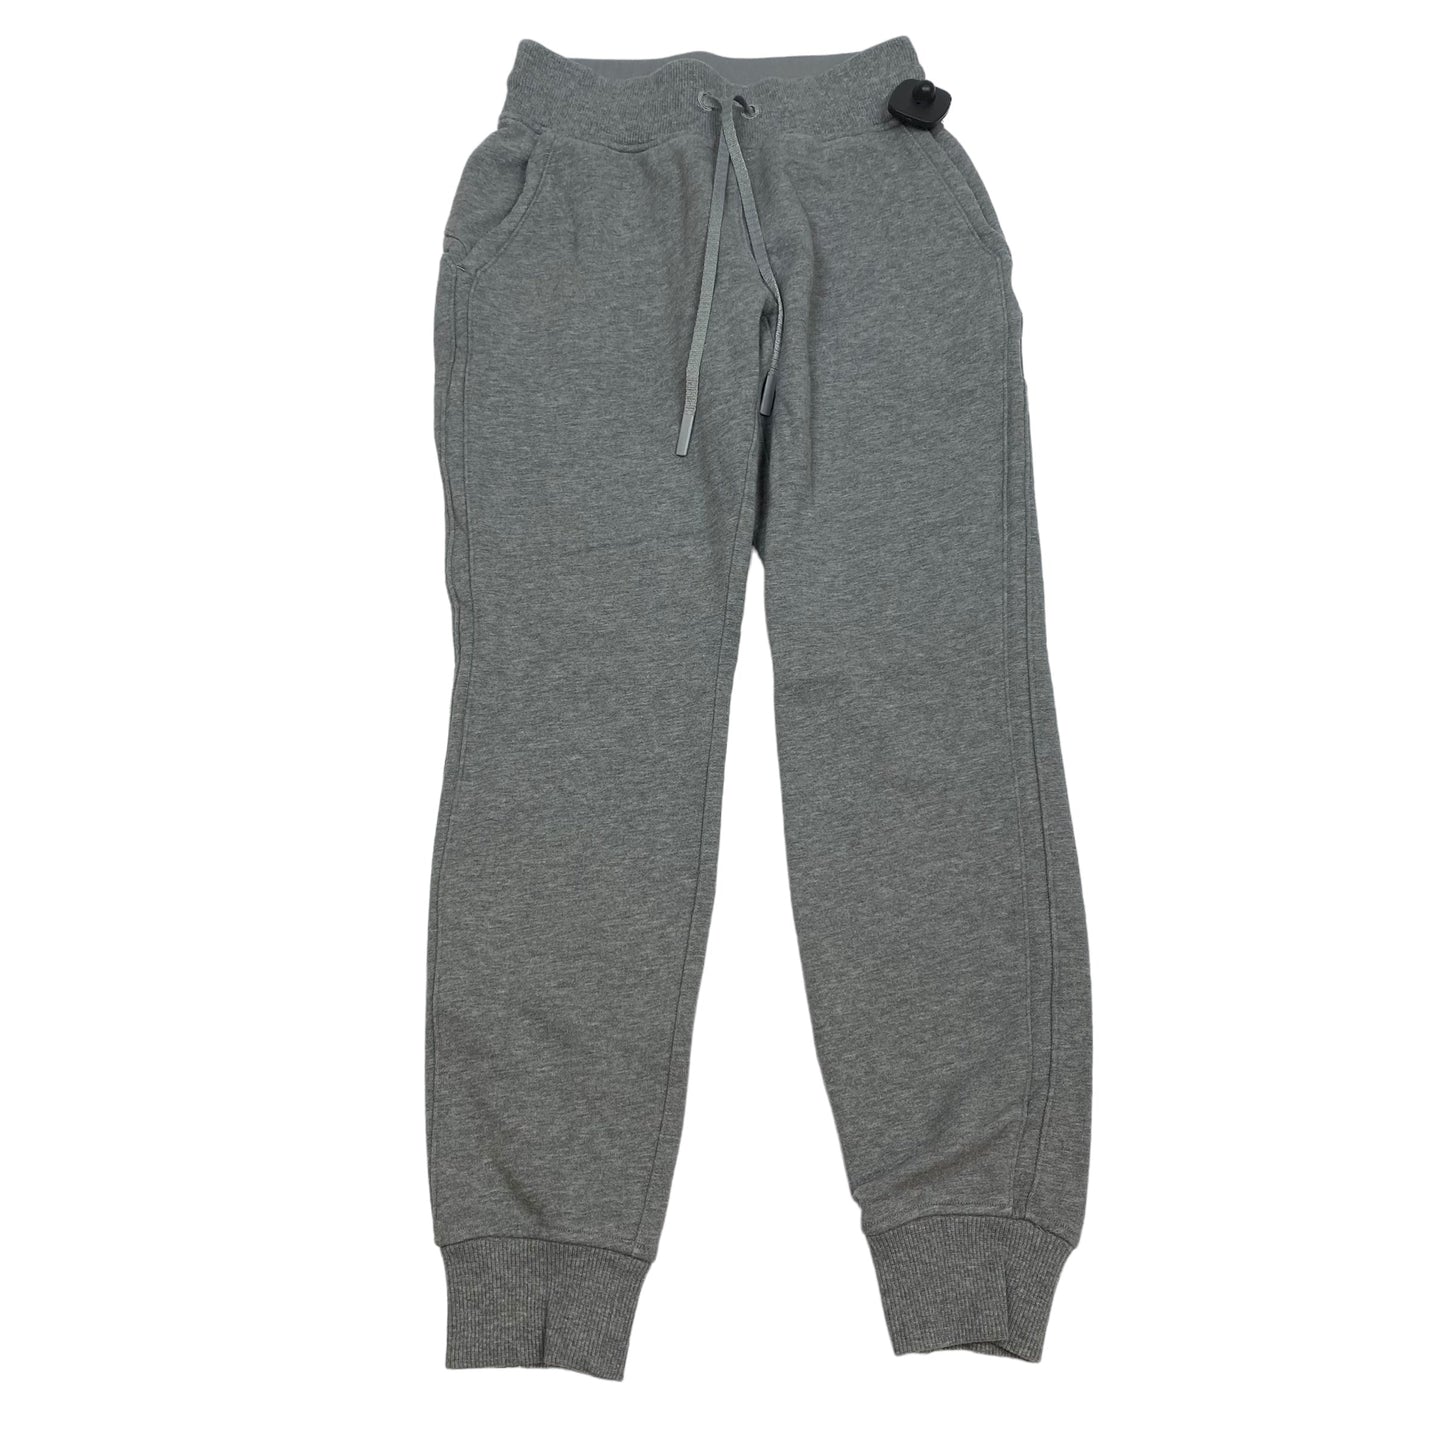 Grey Athletic Pants Lululemon, Size 2